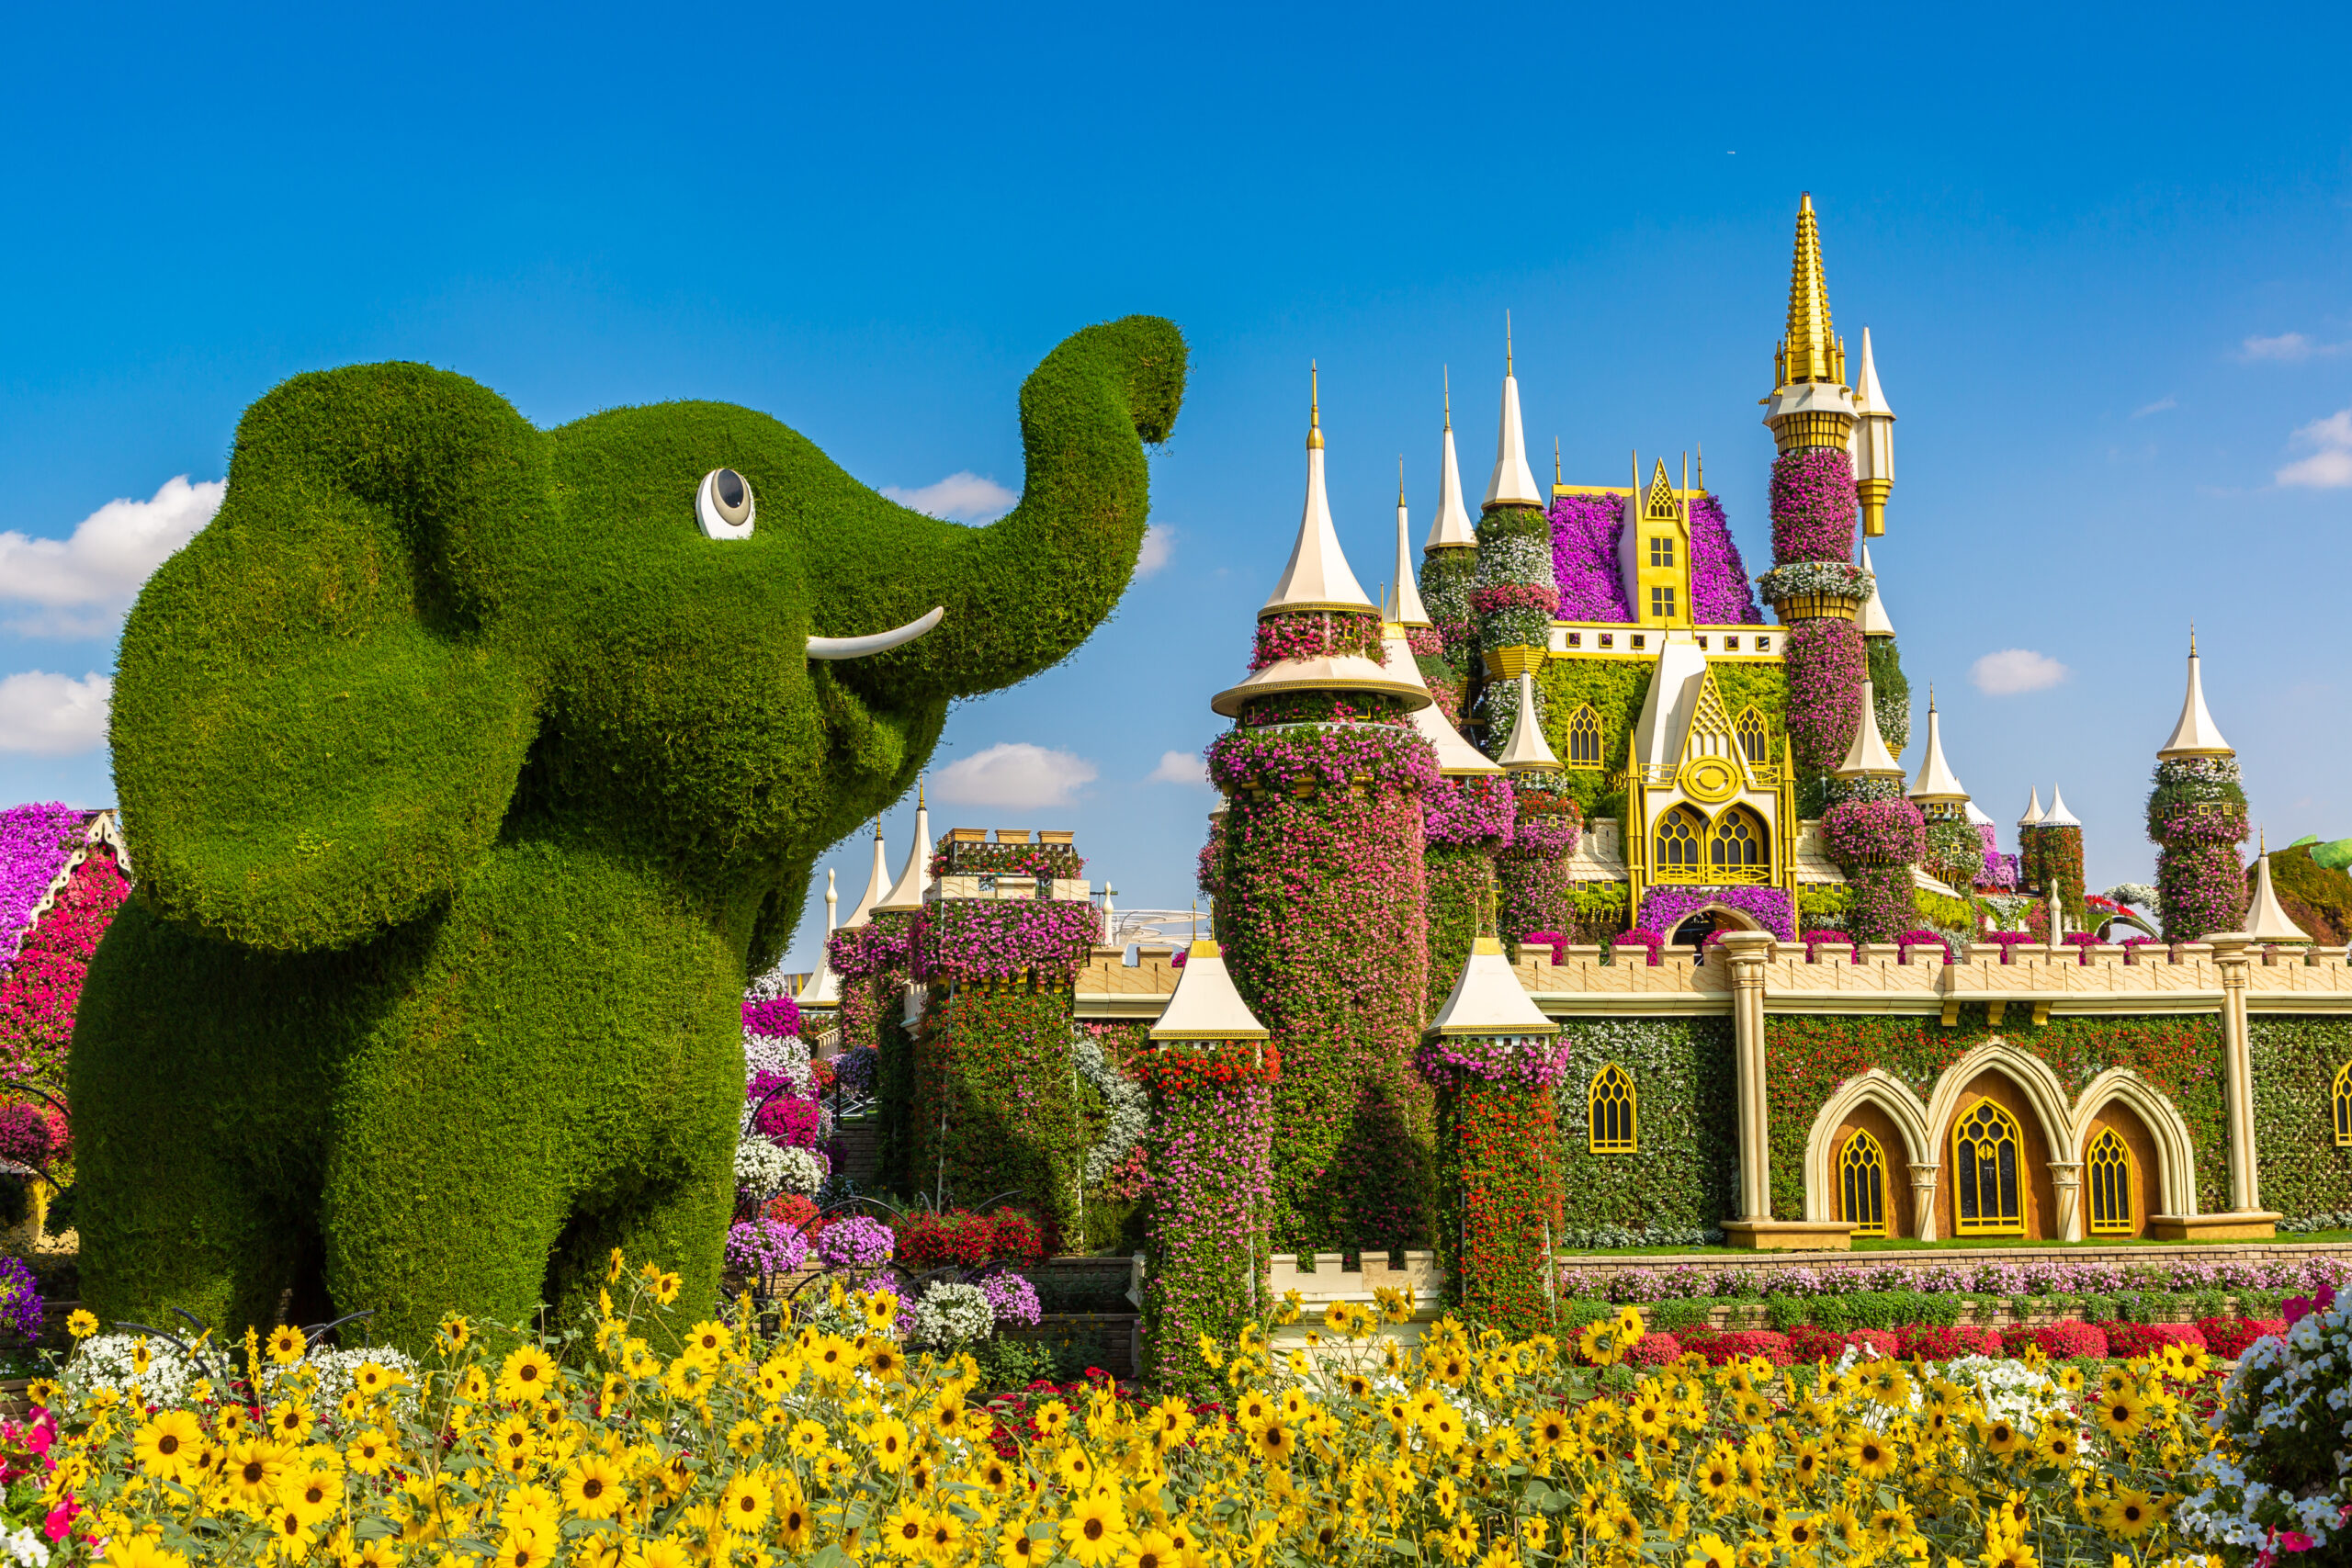 Dubai Miracle Garden - Disney floral castle